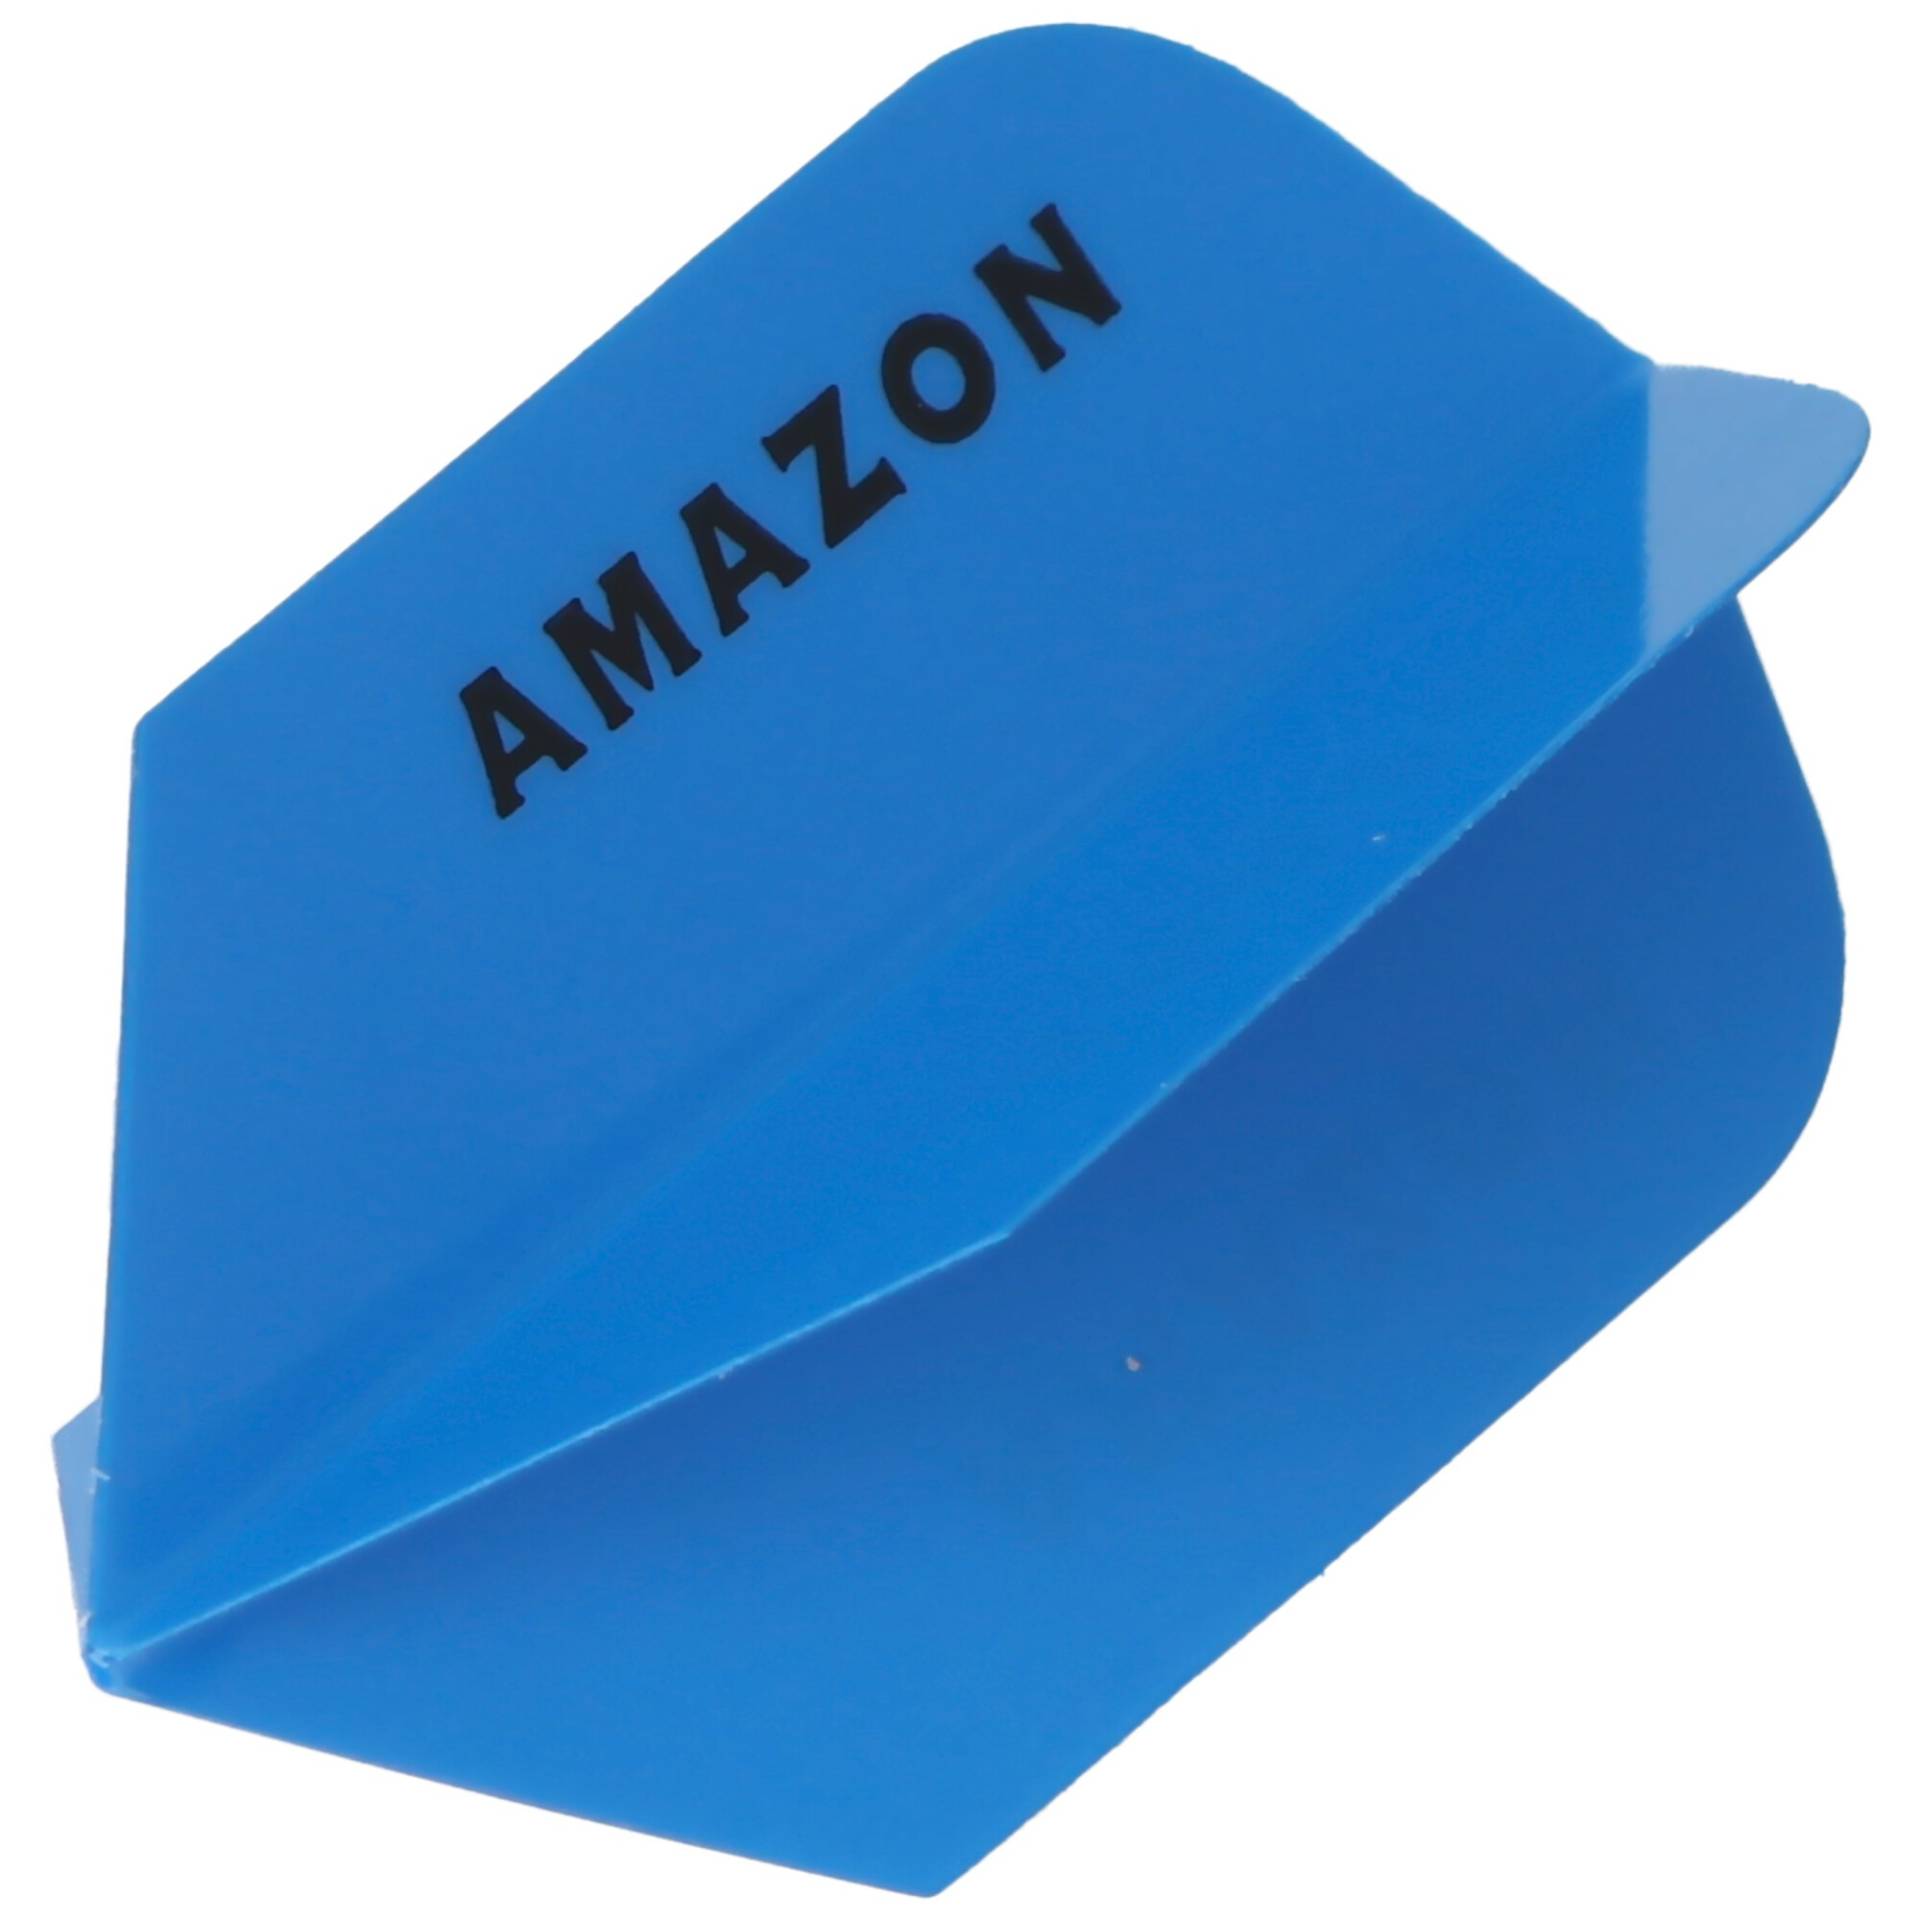 AMAZON Slim-Form-Flight blau mit schwarzem Aufdruck von Pentathlon